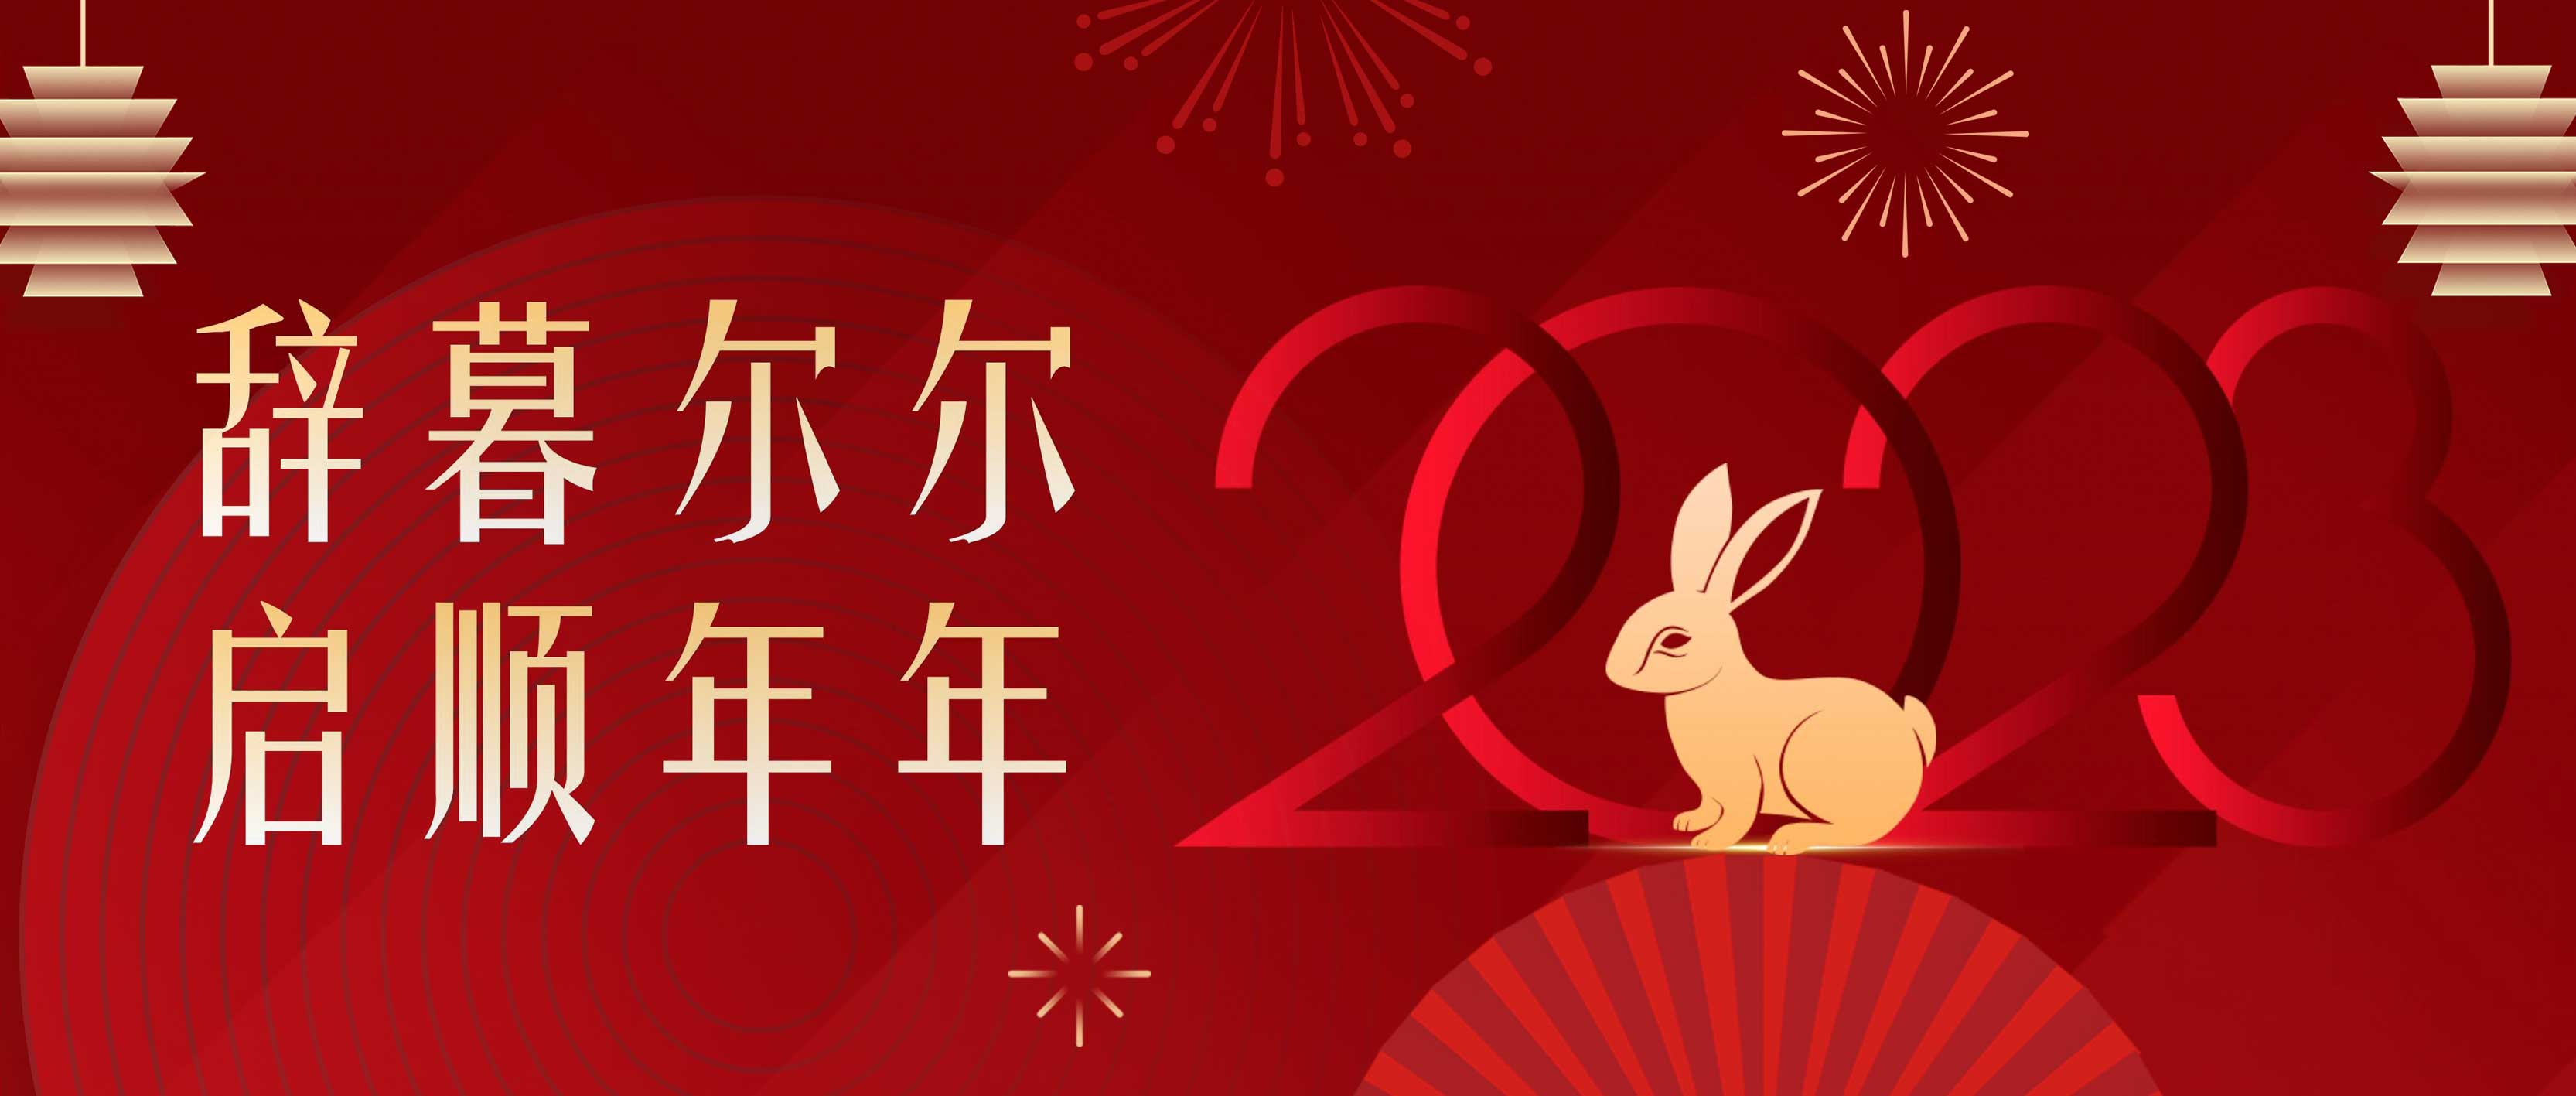 SSIM阳光市场回顾往昔硕果,盼新一年与君共展鸿兔!